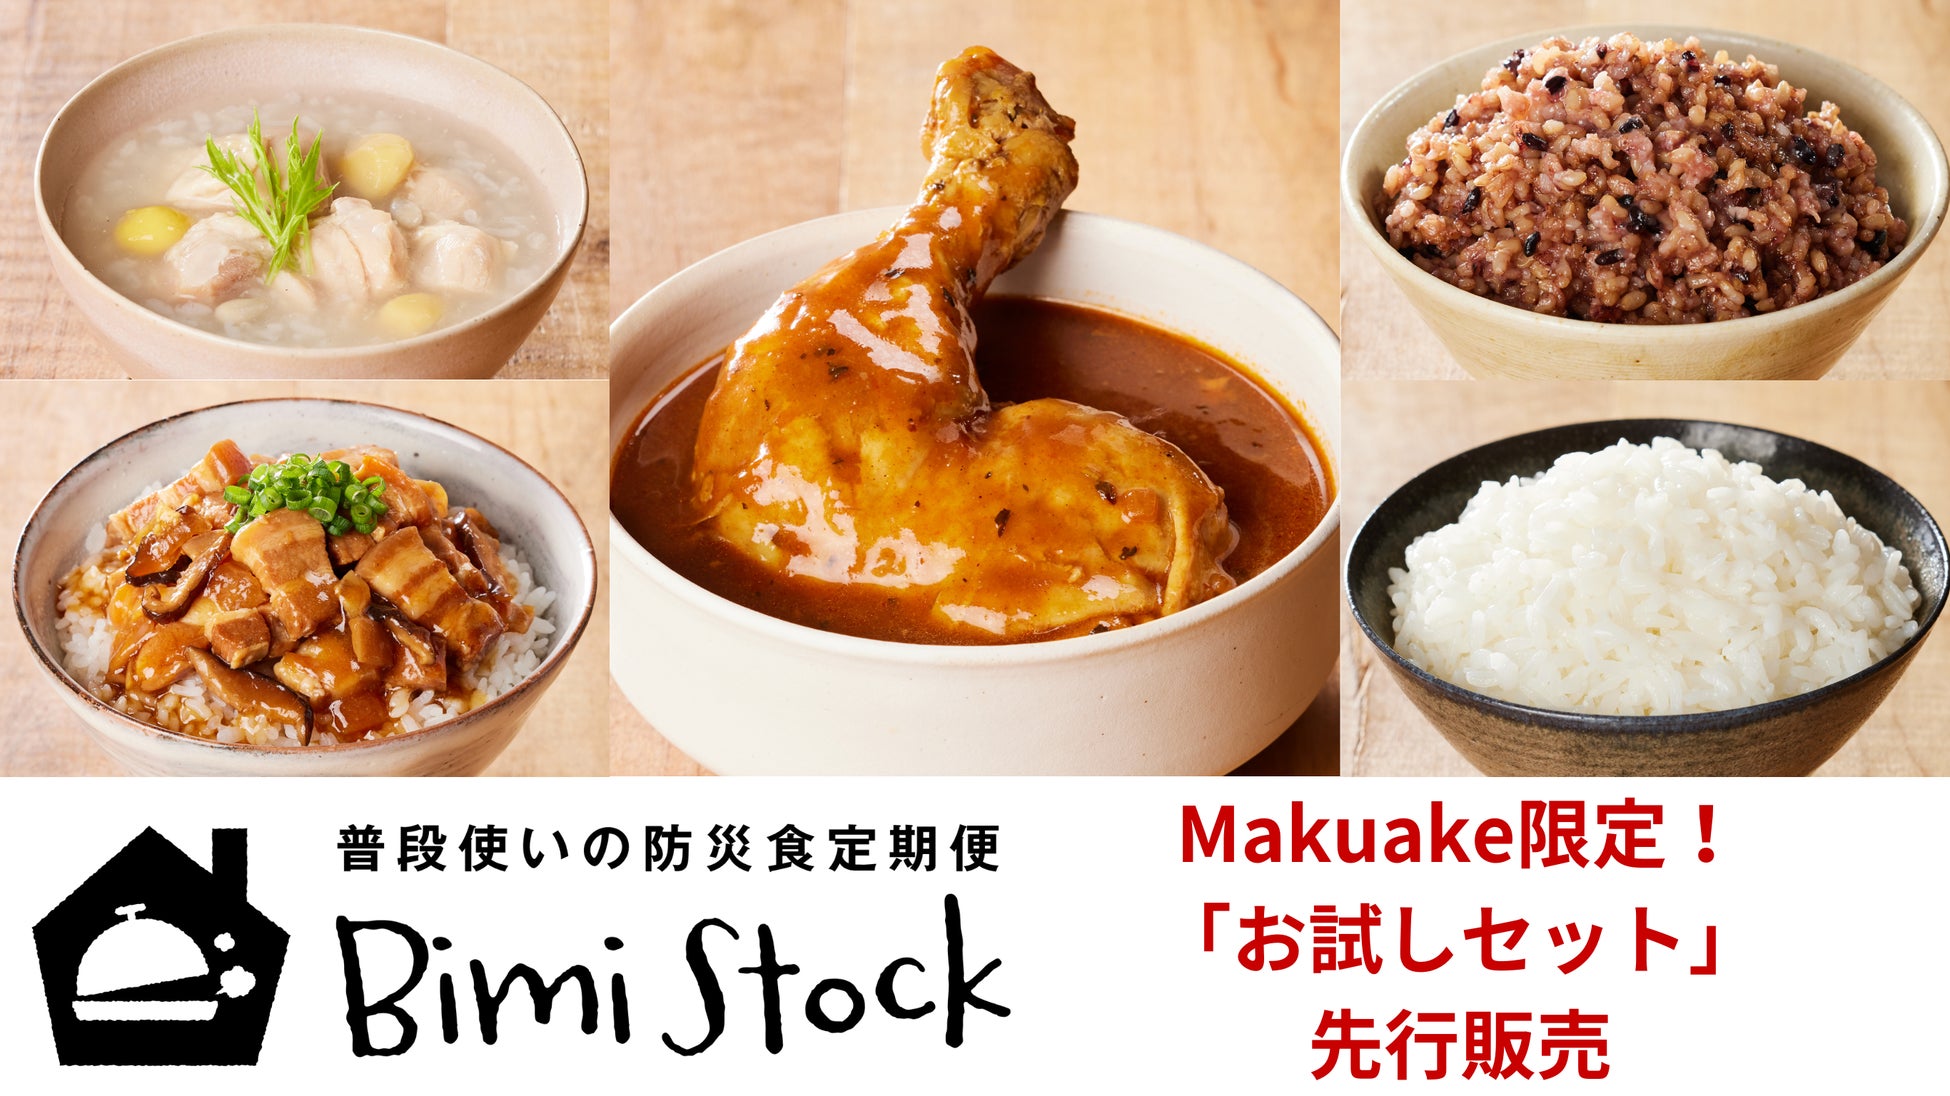 BimiStock｜全国の美味（ビミ）な保存食を3か月毎お届け。普段使いの防災食定期便ビミストック。応援購入サービスMakuakeでお得なお試しセット（最大20%OFF）を先行販売開始！